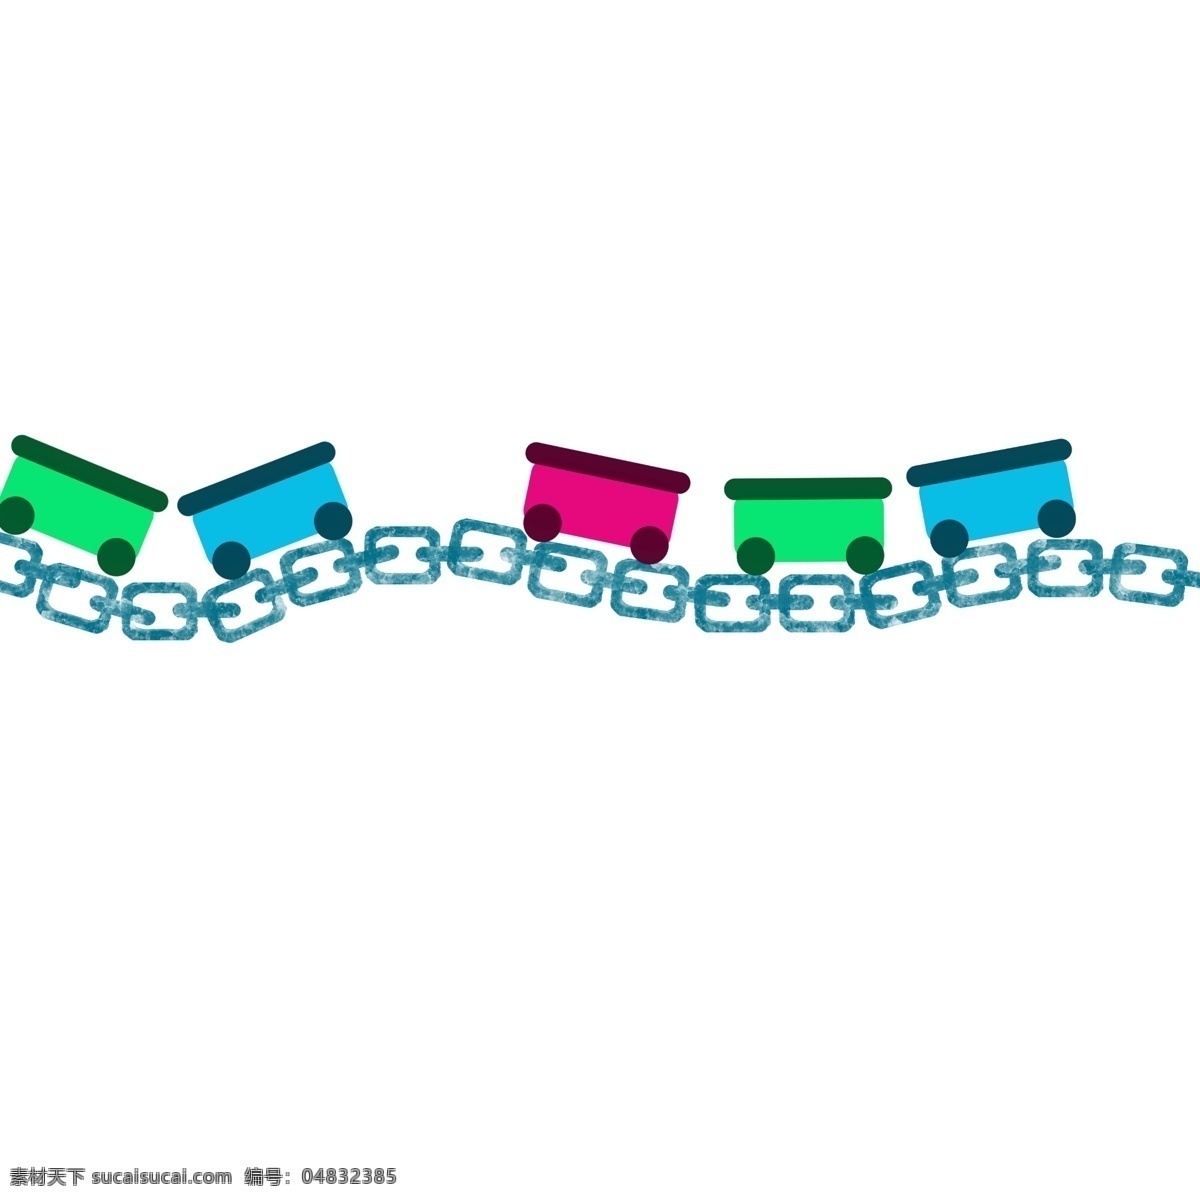 玩具 锁链 分割线 插画 玩具分割线 彩色的分割线 锁链分割线 创意分割线 手绘分割线 卡通分割线